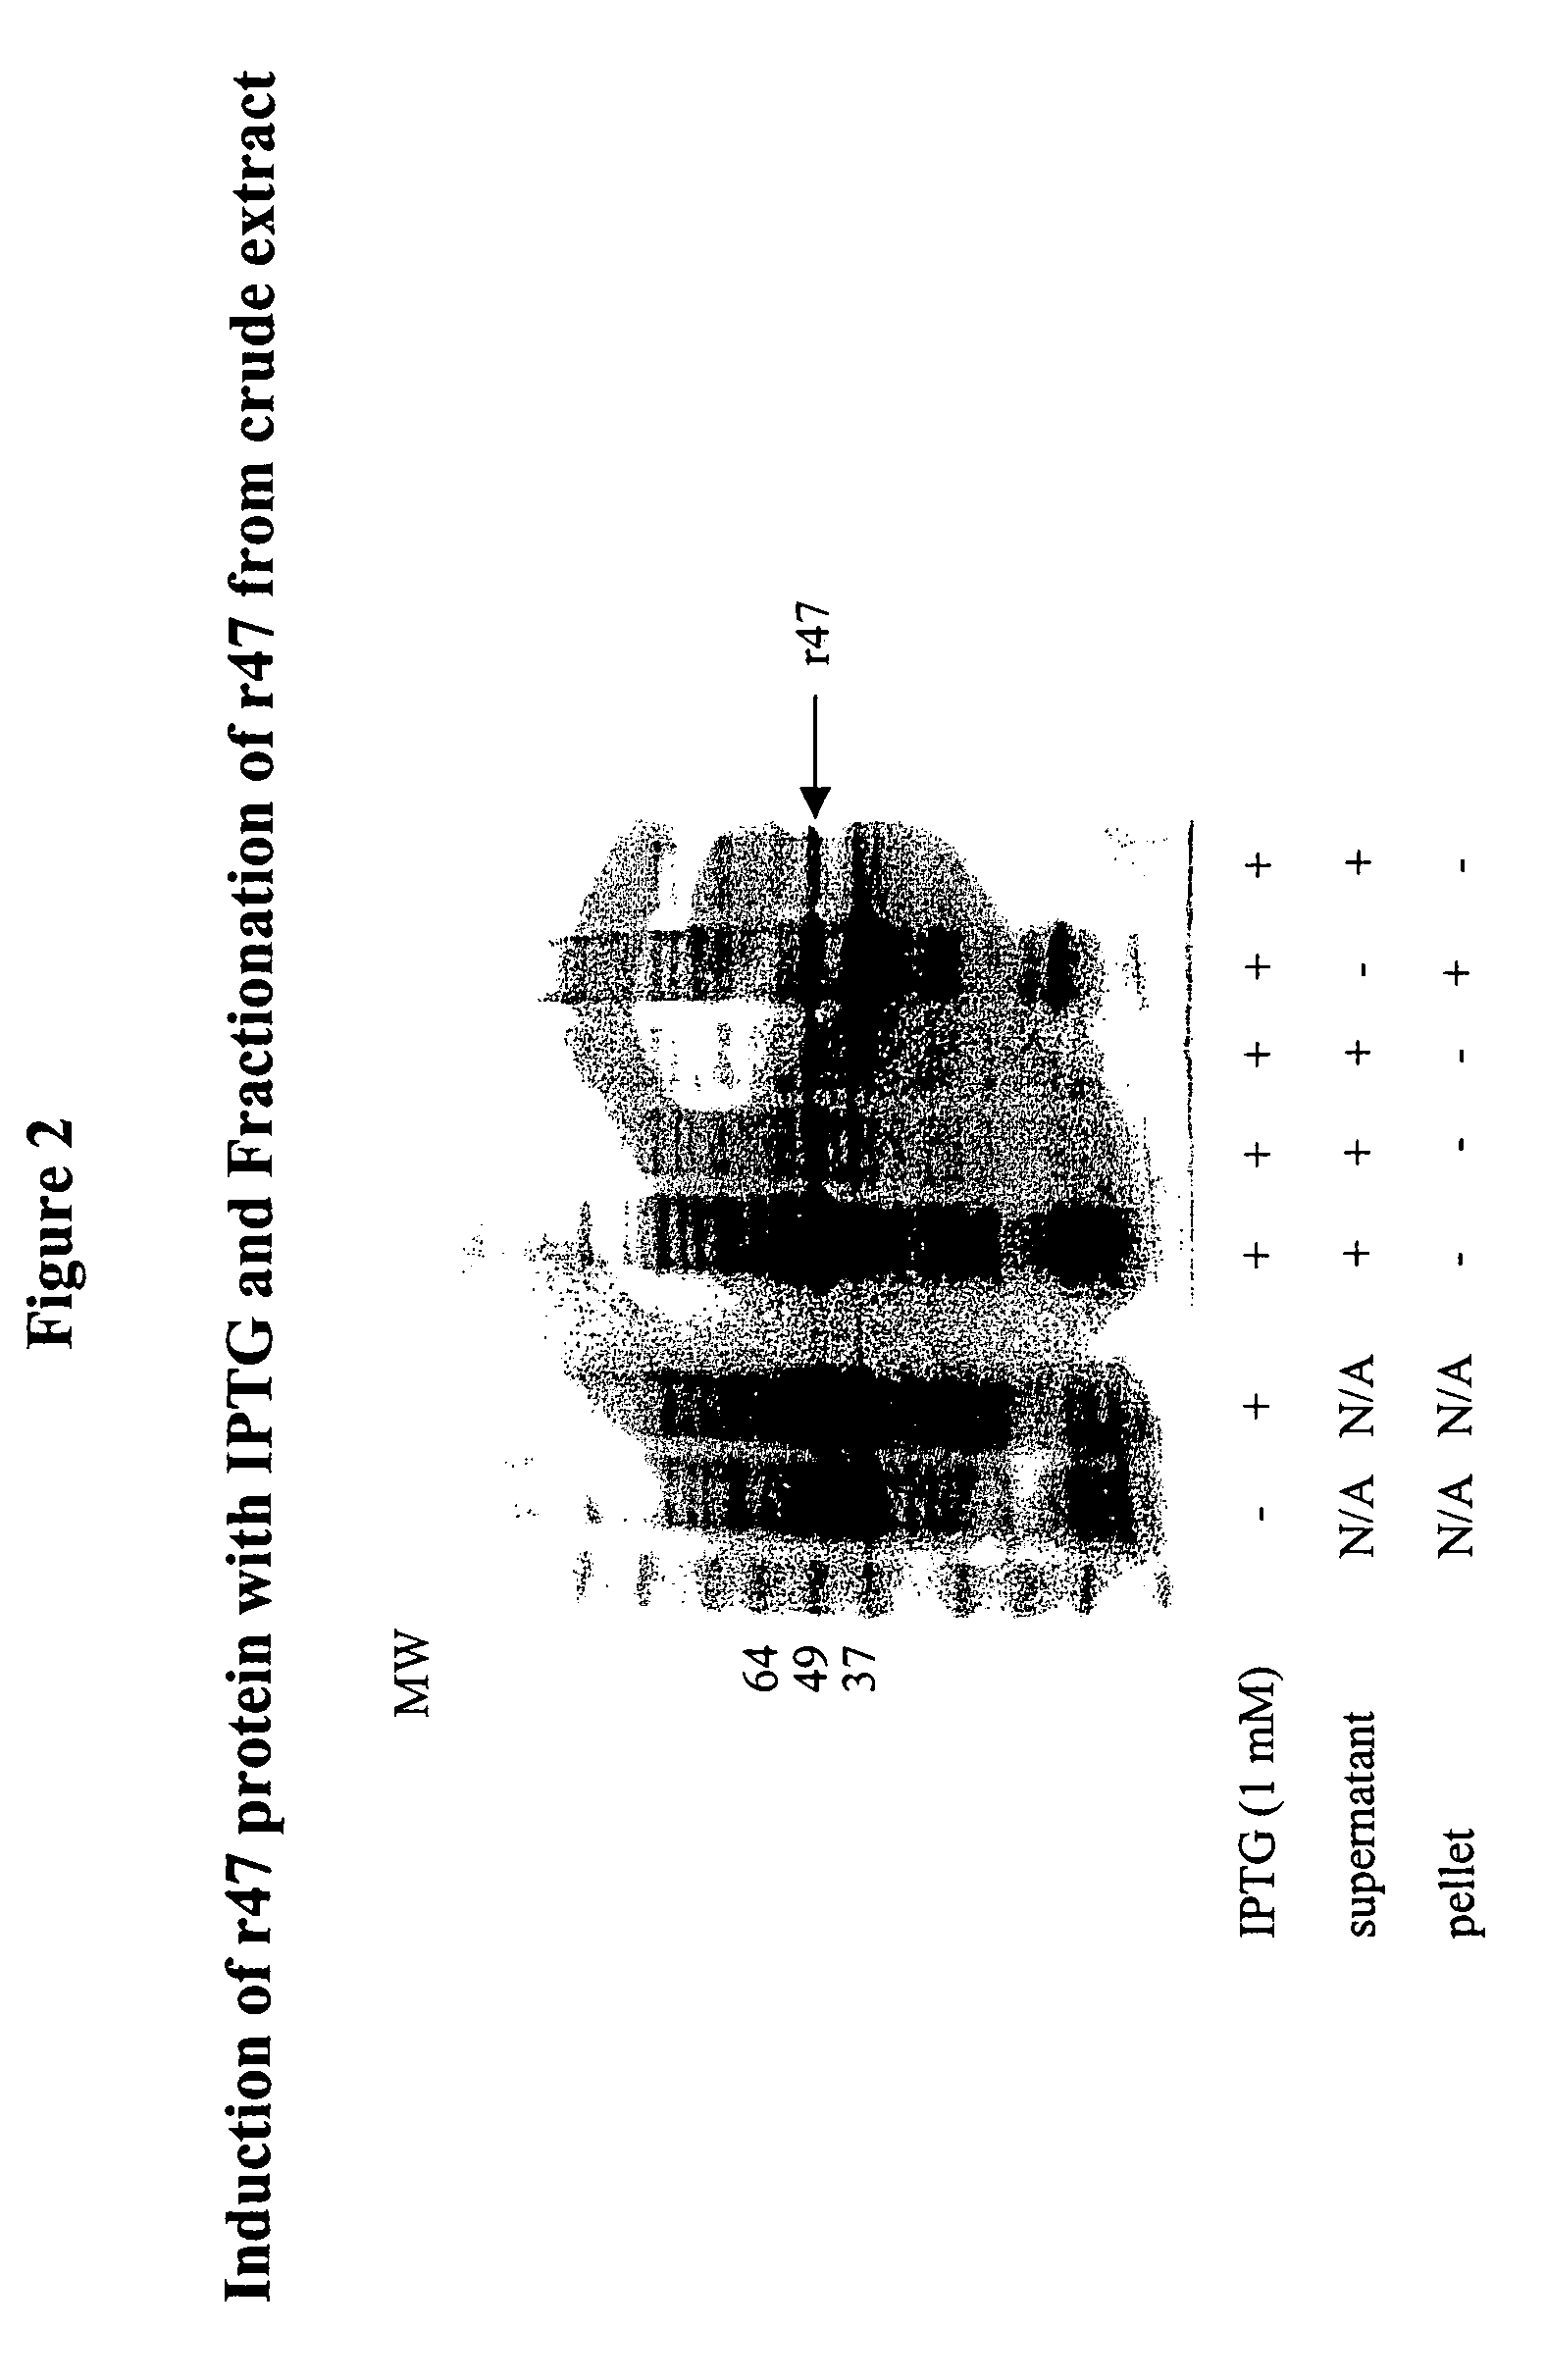 Orientia tsutsugamushi truncated recombinant outer membrane protein (r47) and (r57) vaccines diagnostics and therapeutics for scrub typhus